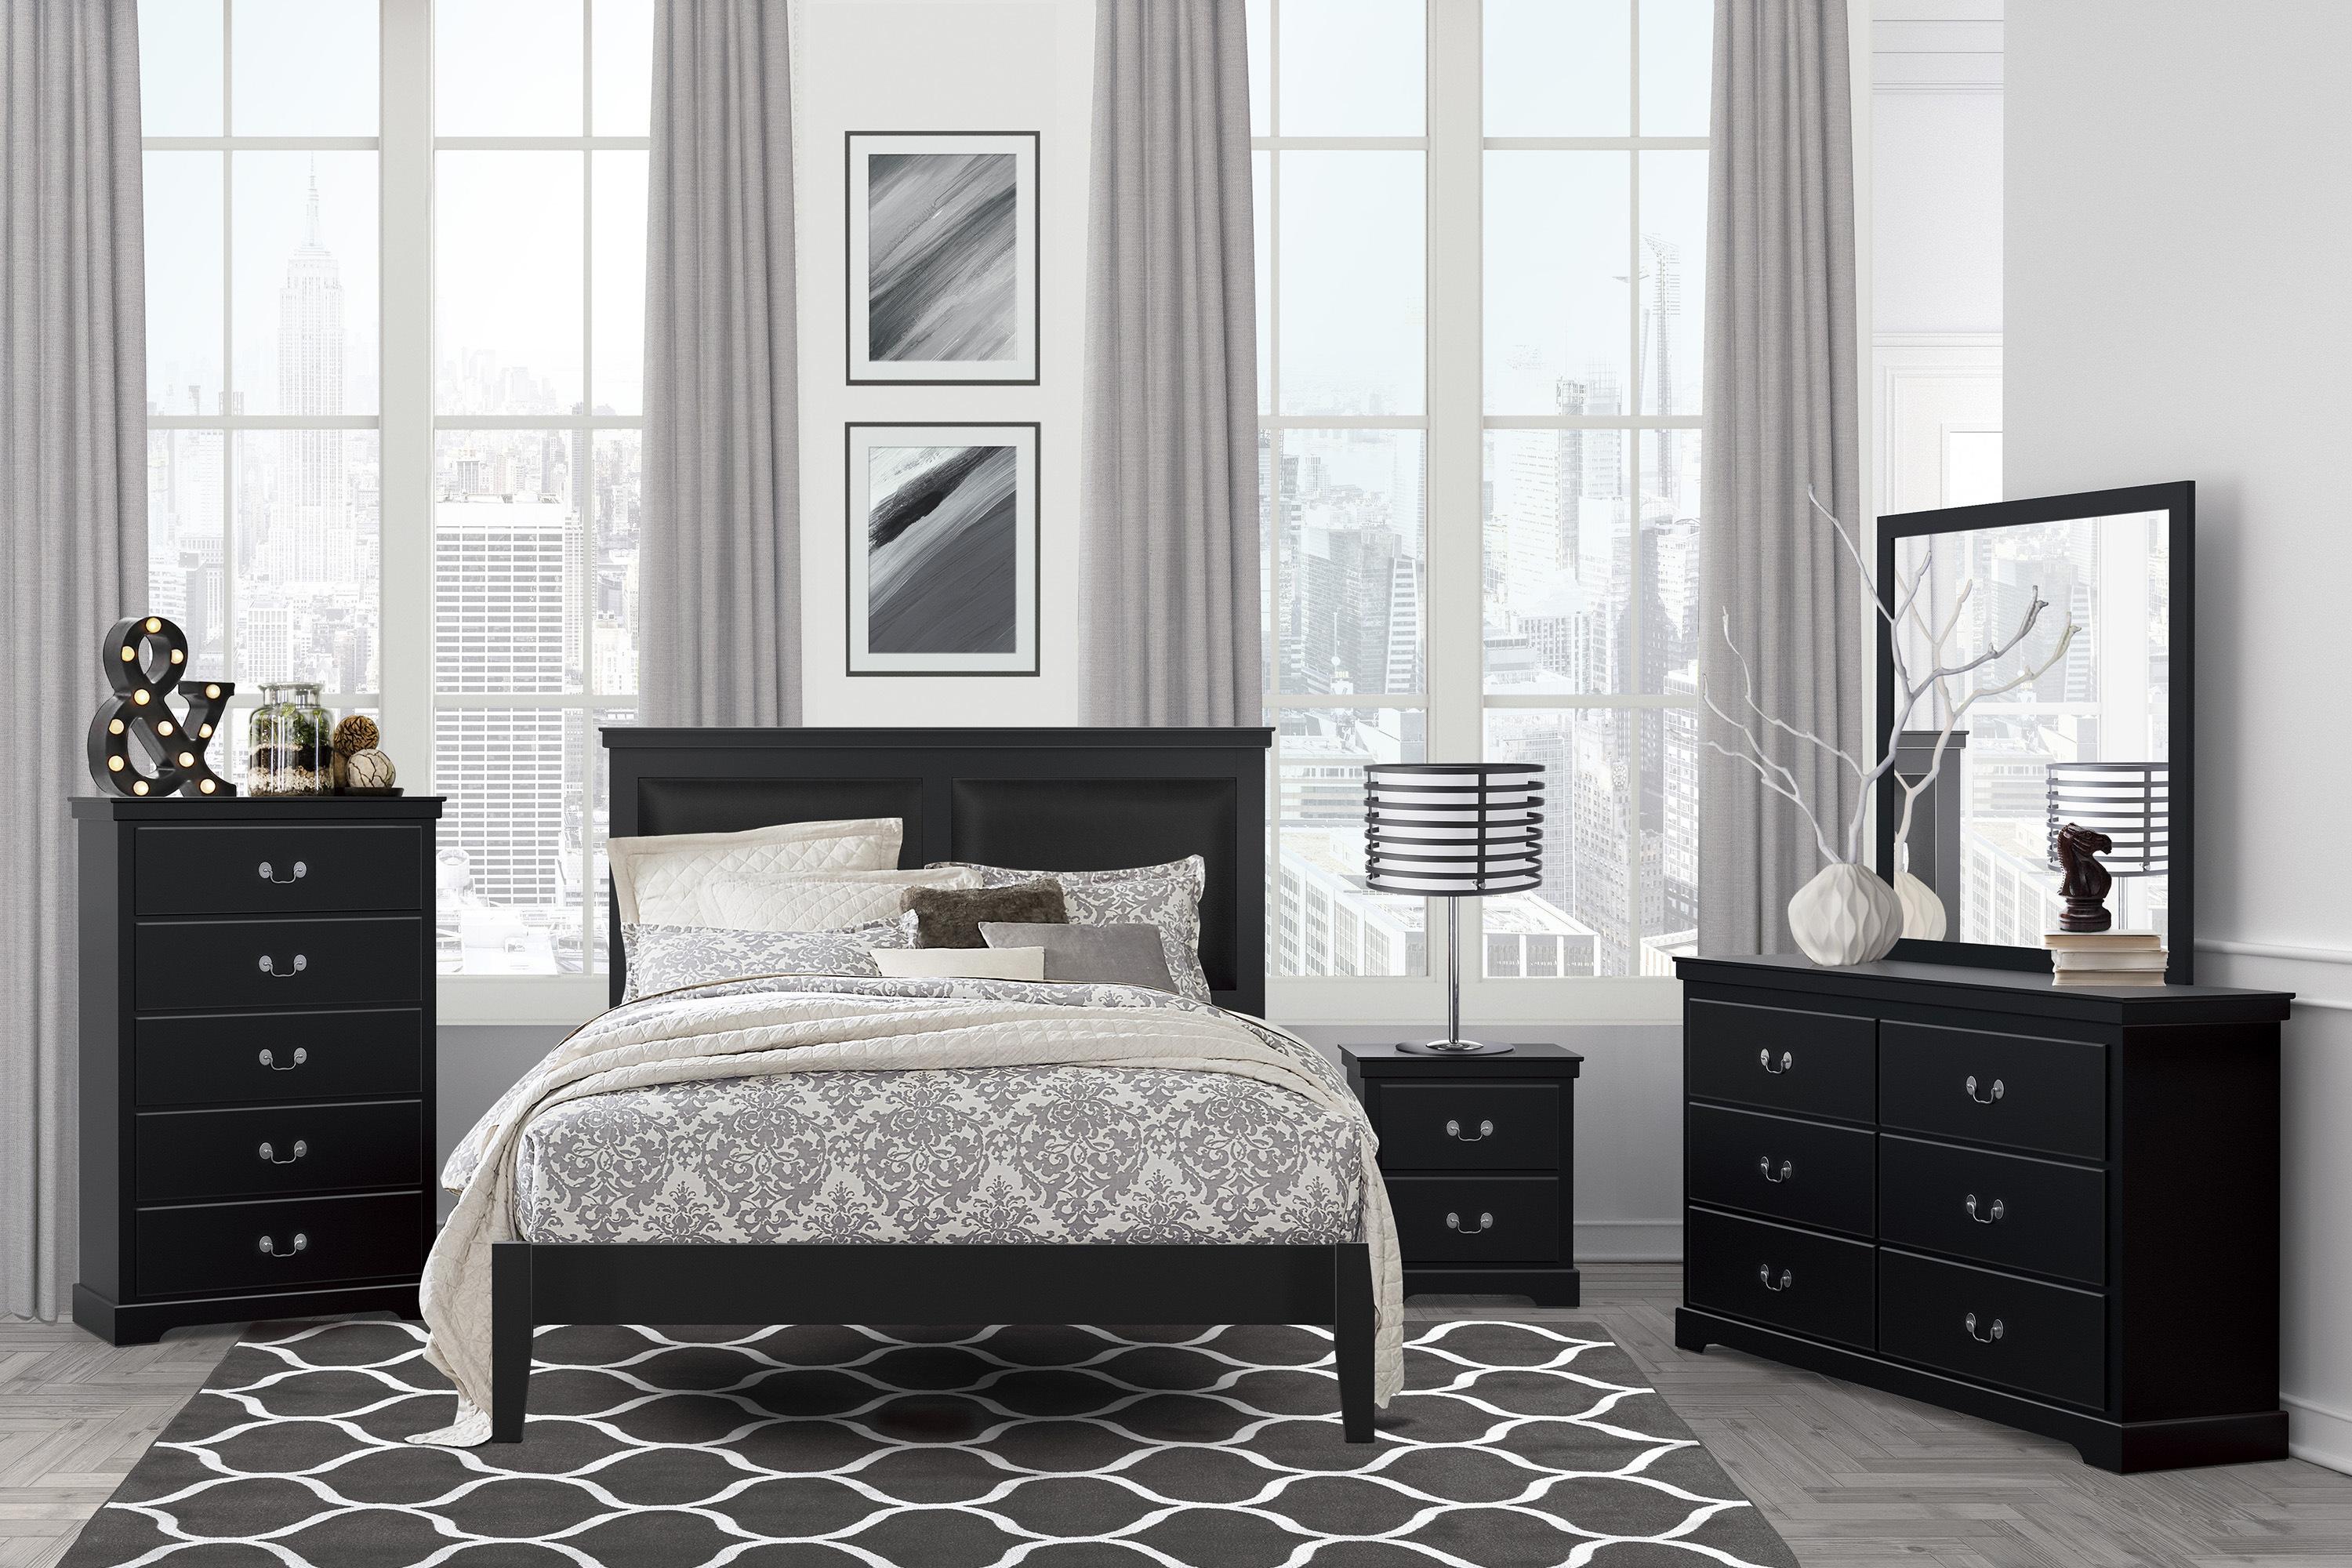 

                    
Buy Modern Black Wood CAL Bedroom Set 3pcs Homelegance 1519BKK-1CK* Seabright
